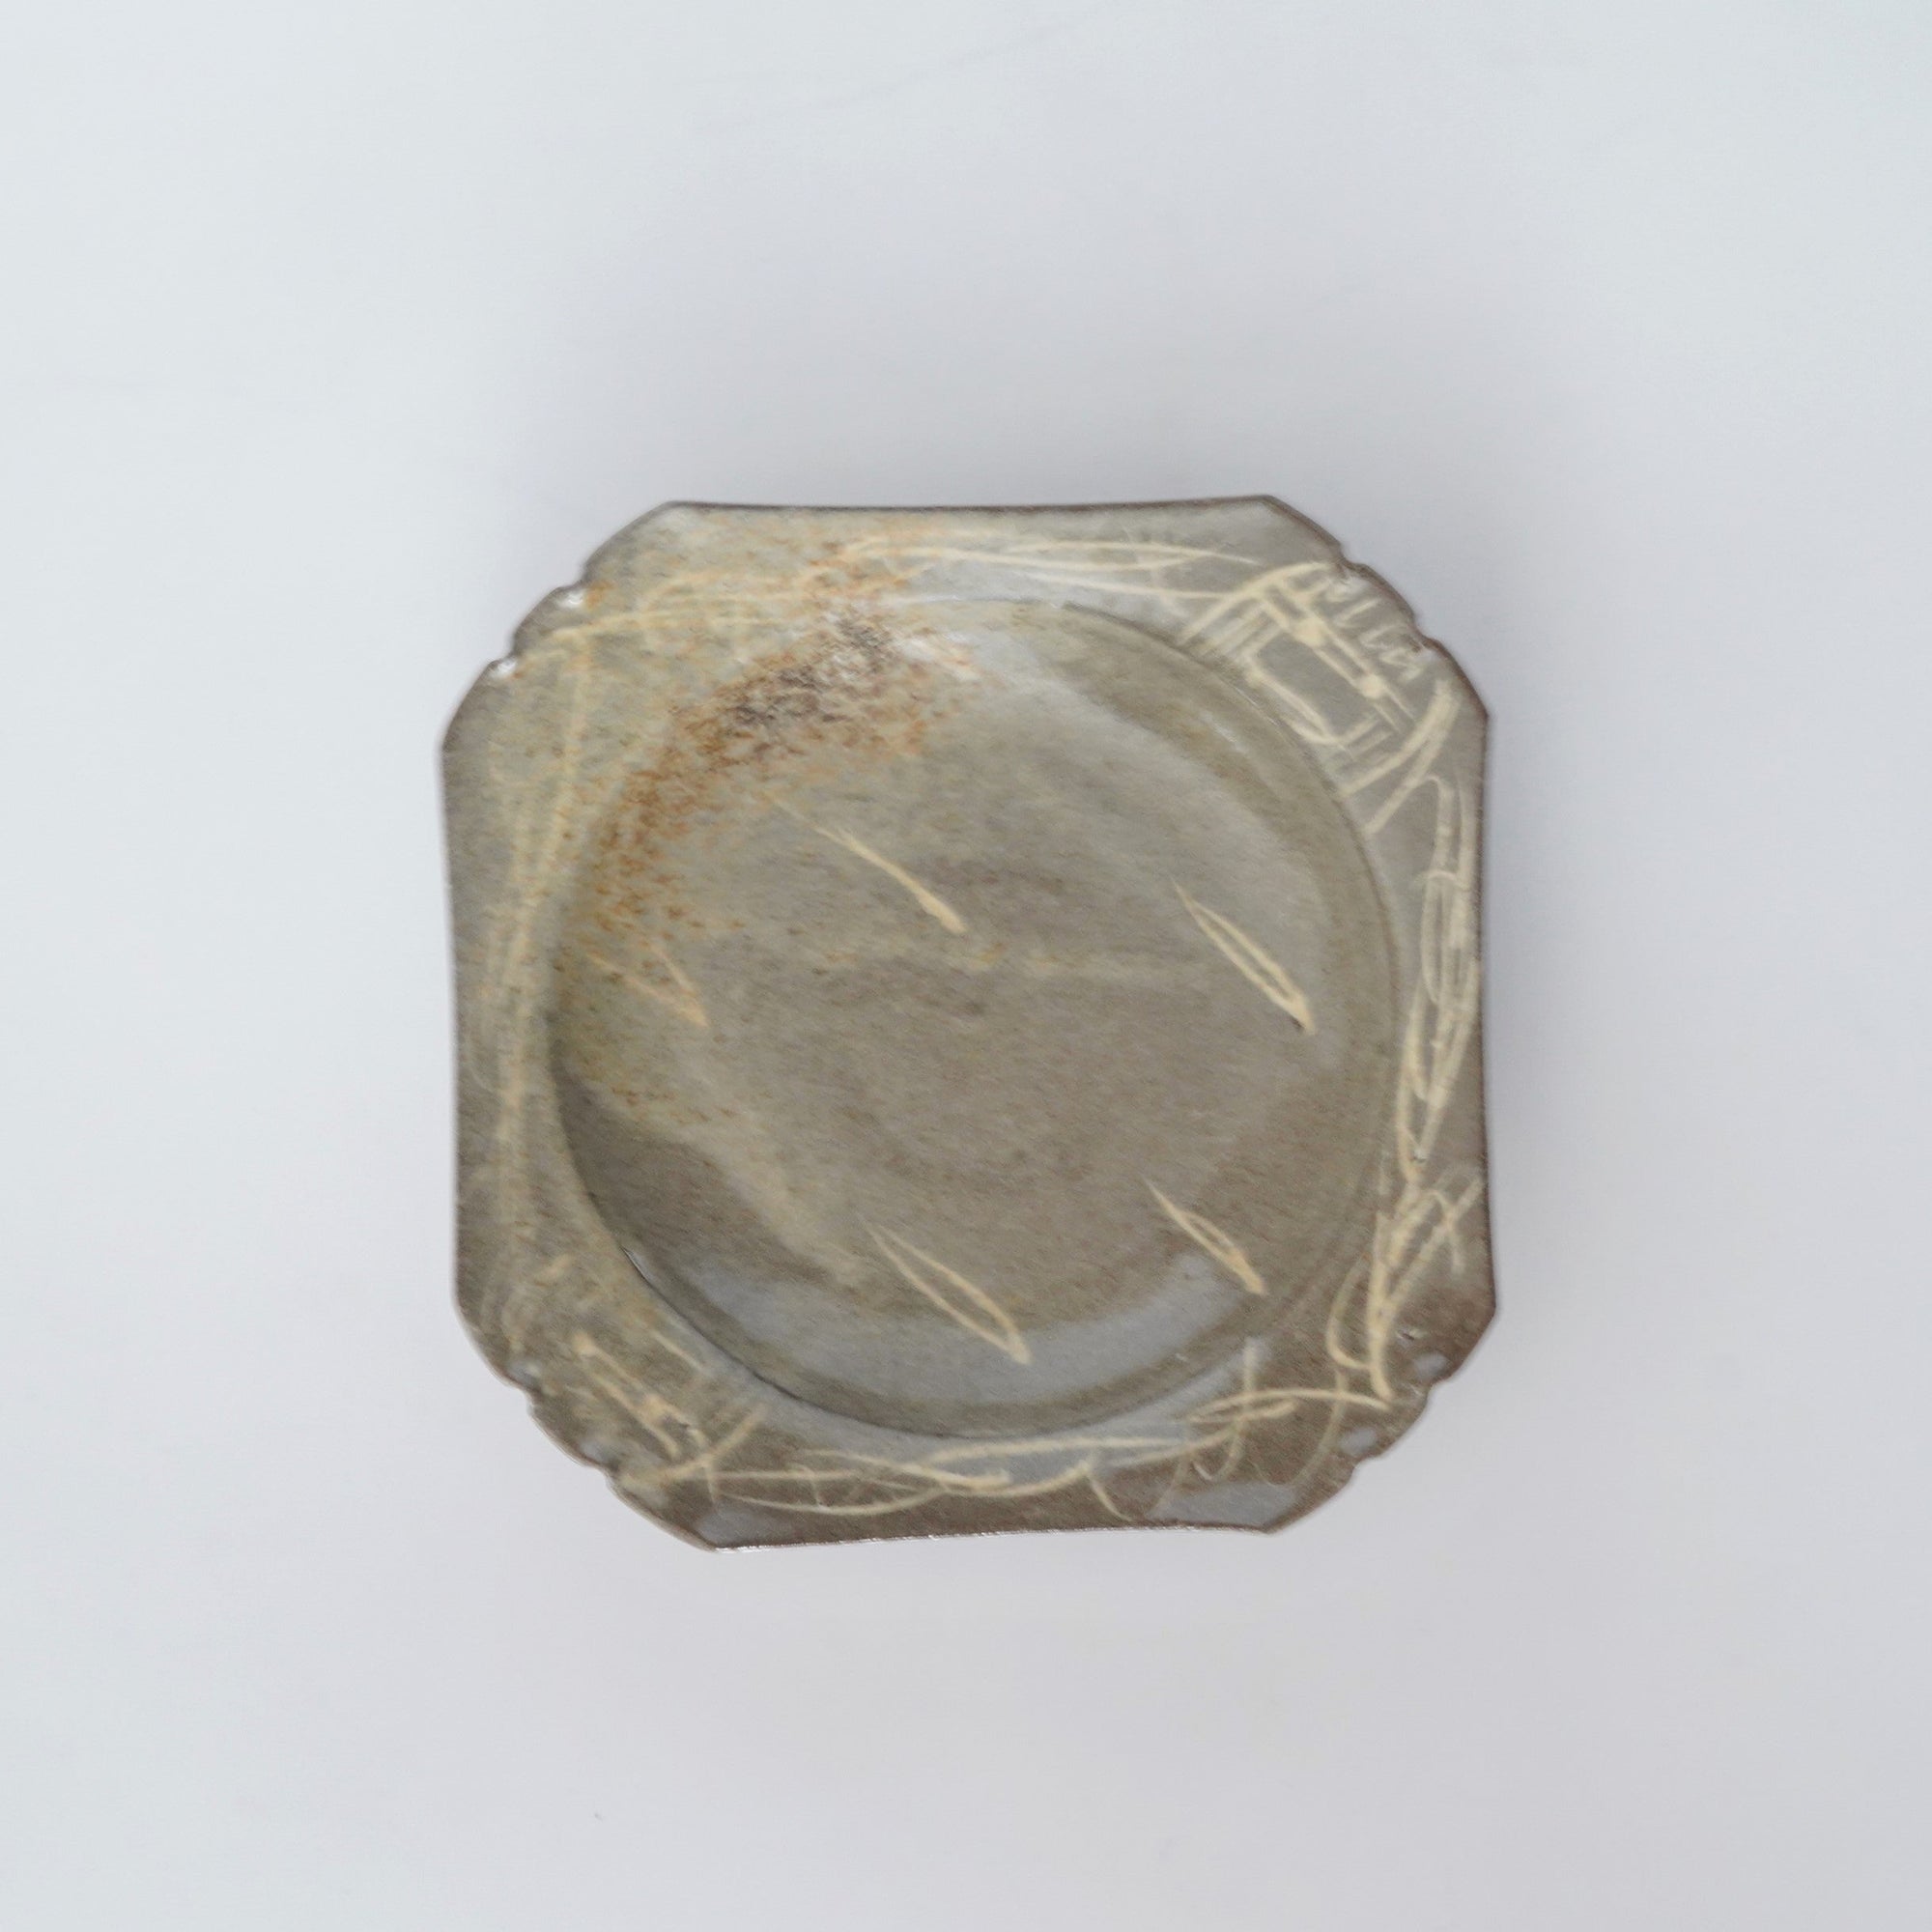 【Masahiro Kishida】E-Garatsu squared small bowl